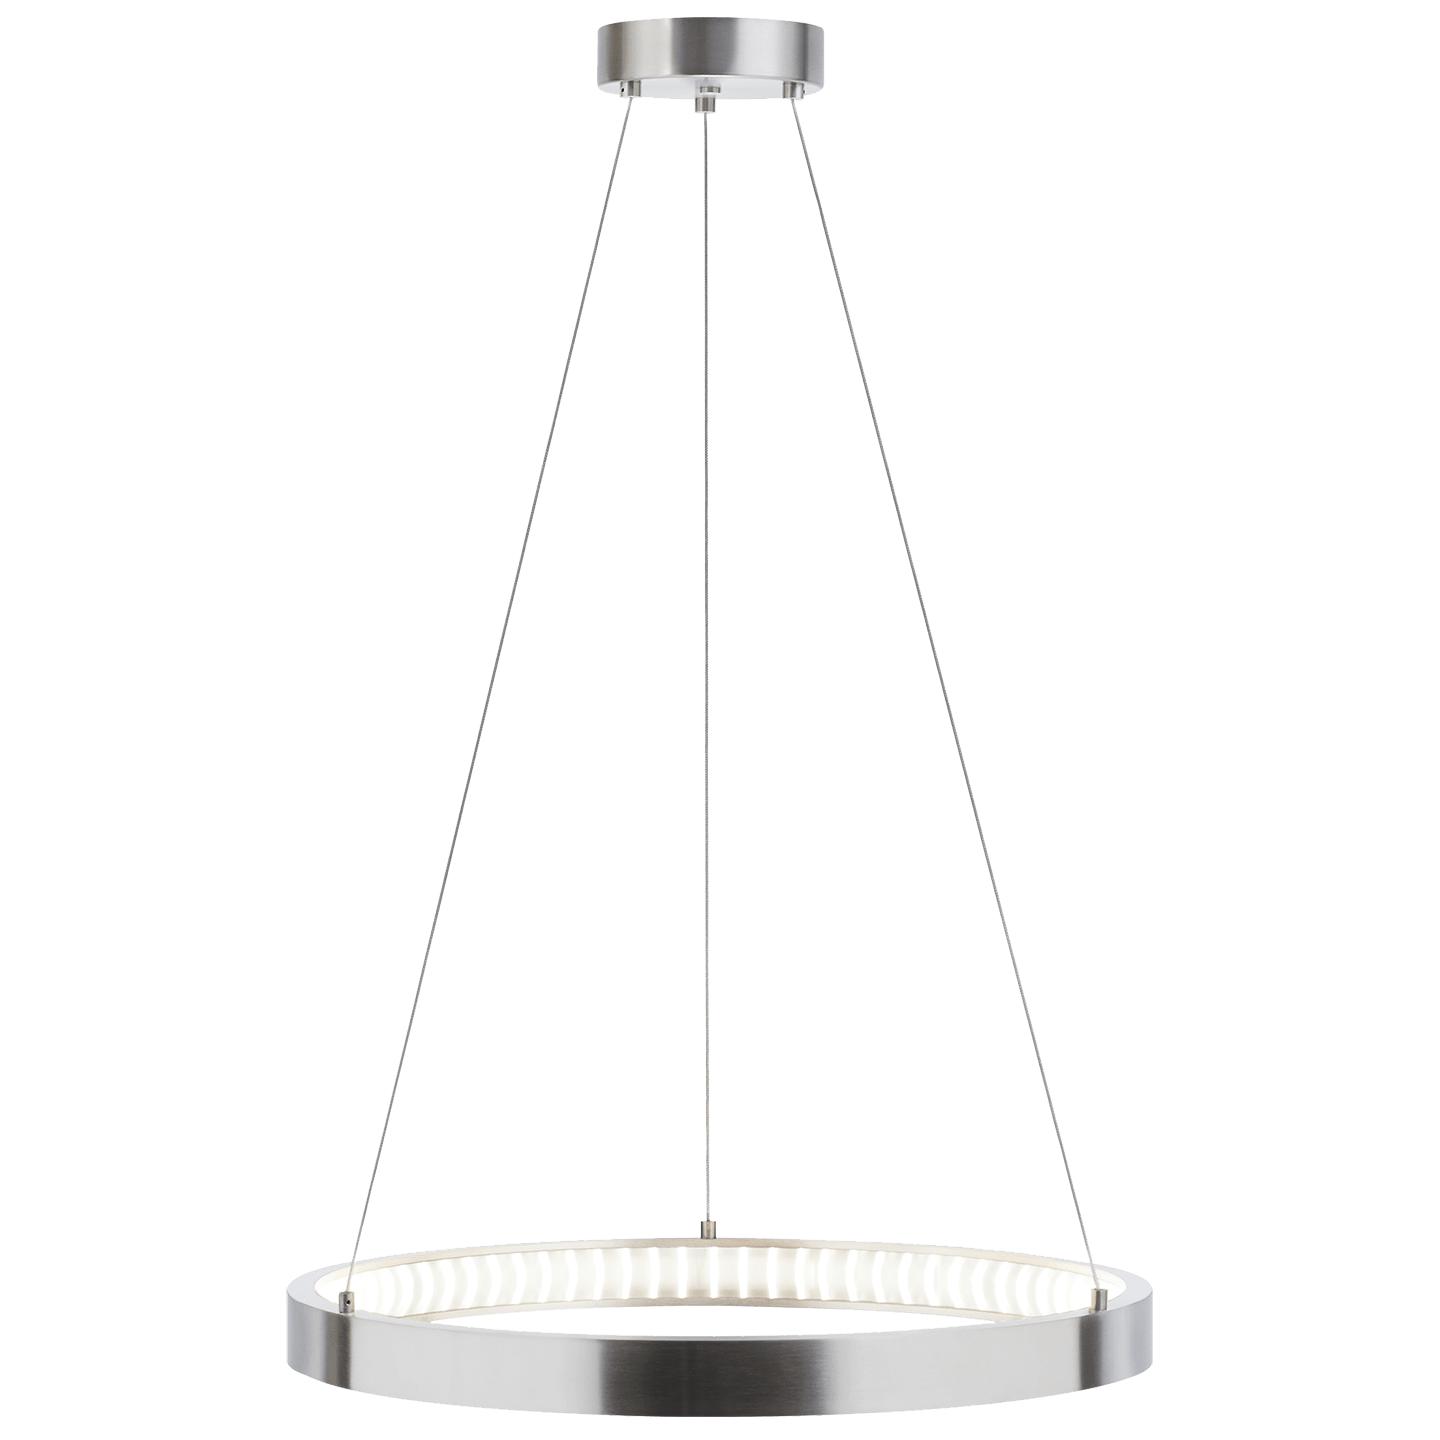 Купить Подвесной светильник Bodiam 24 Suspension в интернет-магазине roooms.ru